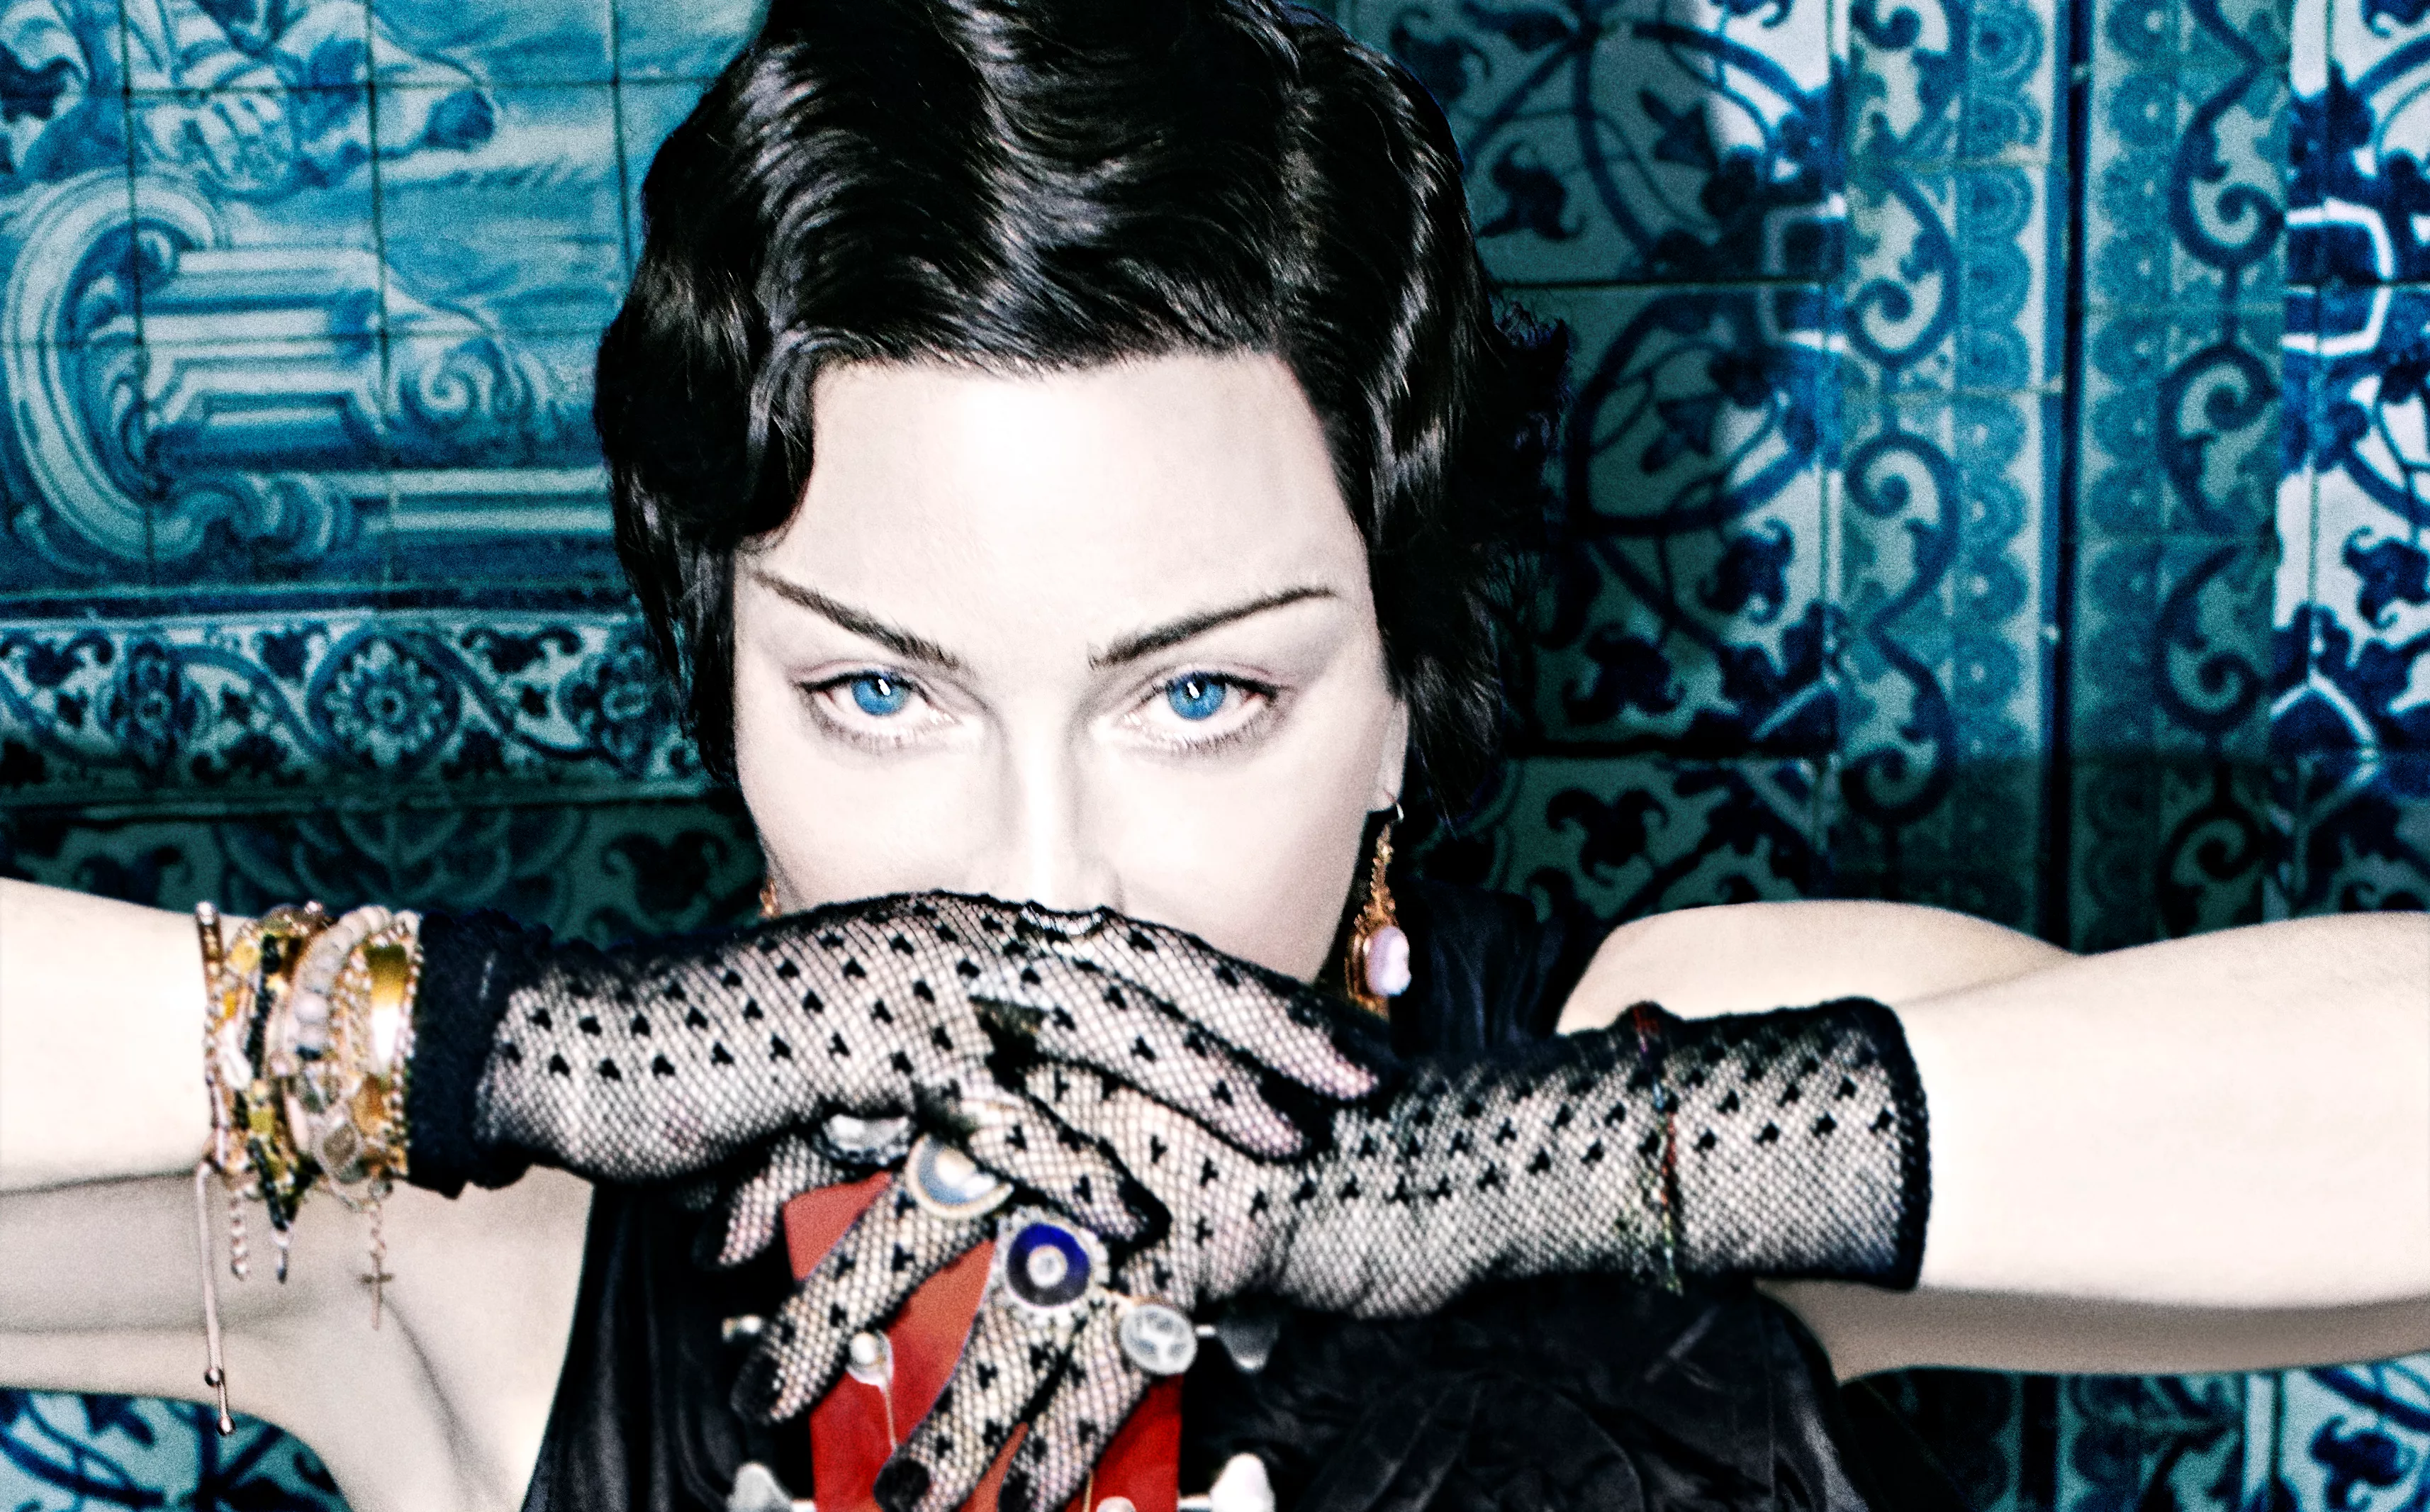 Tourpremiere: De første reaktioner på Madonnas monsterturné-start